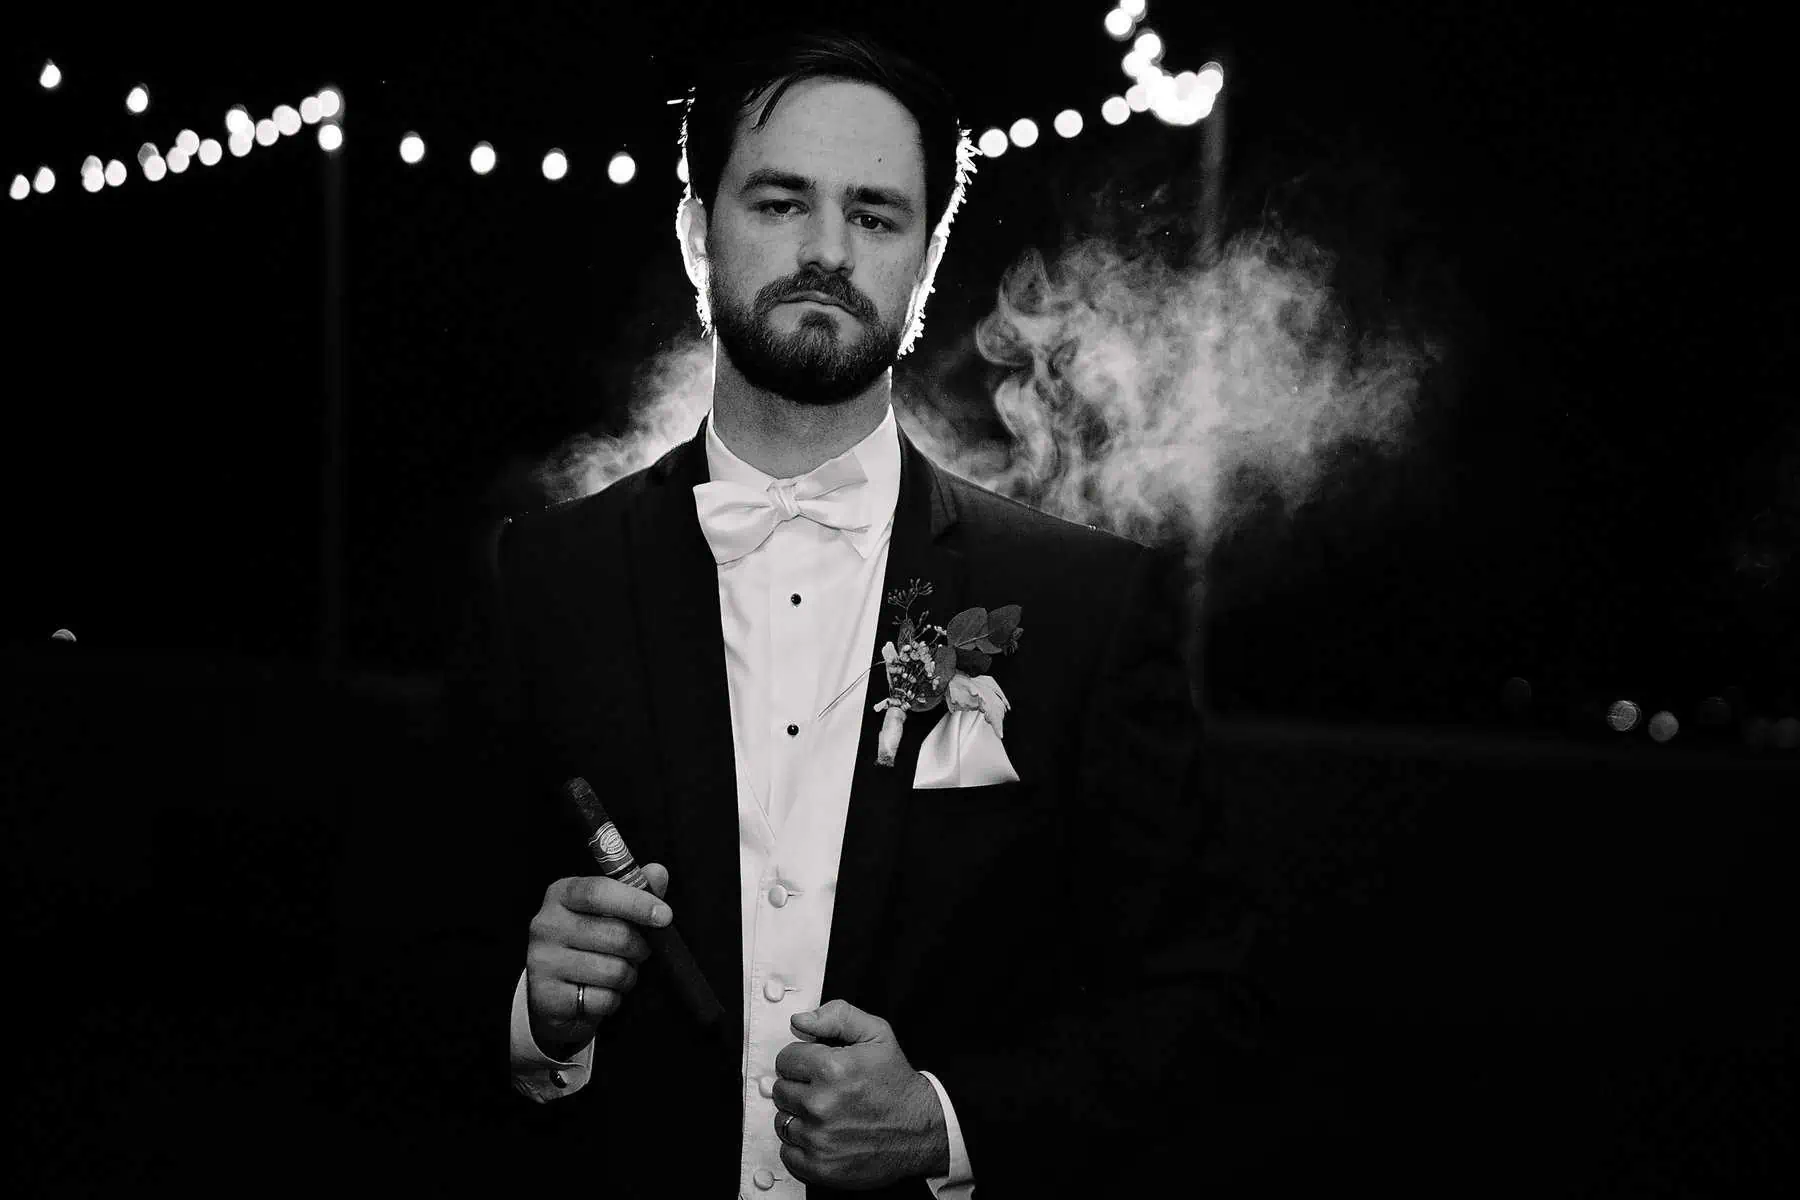 A man in a tuxedo smoking a cigar.